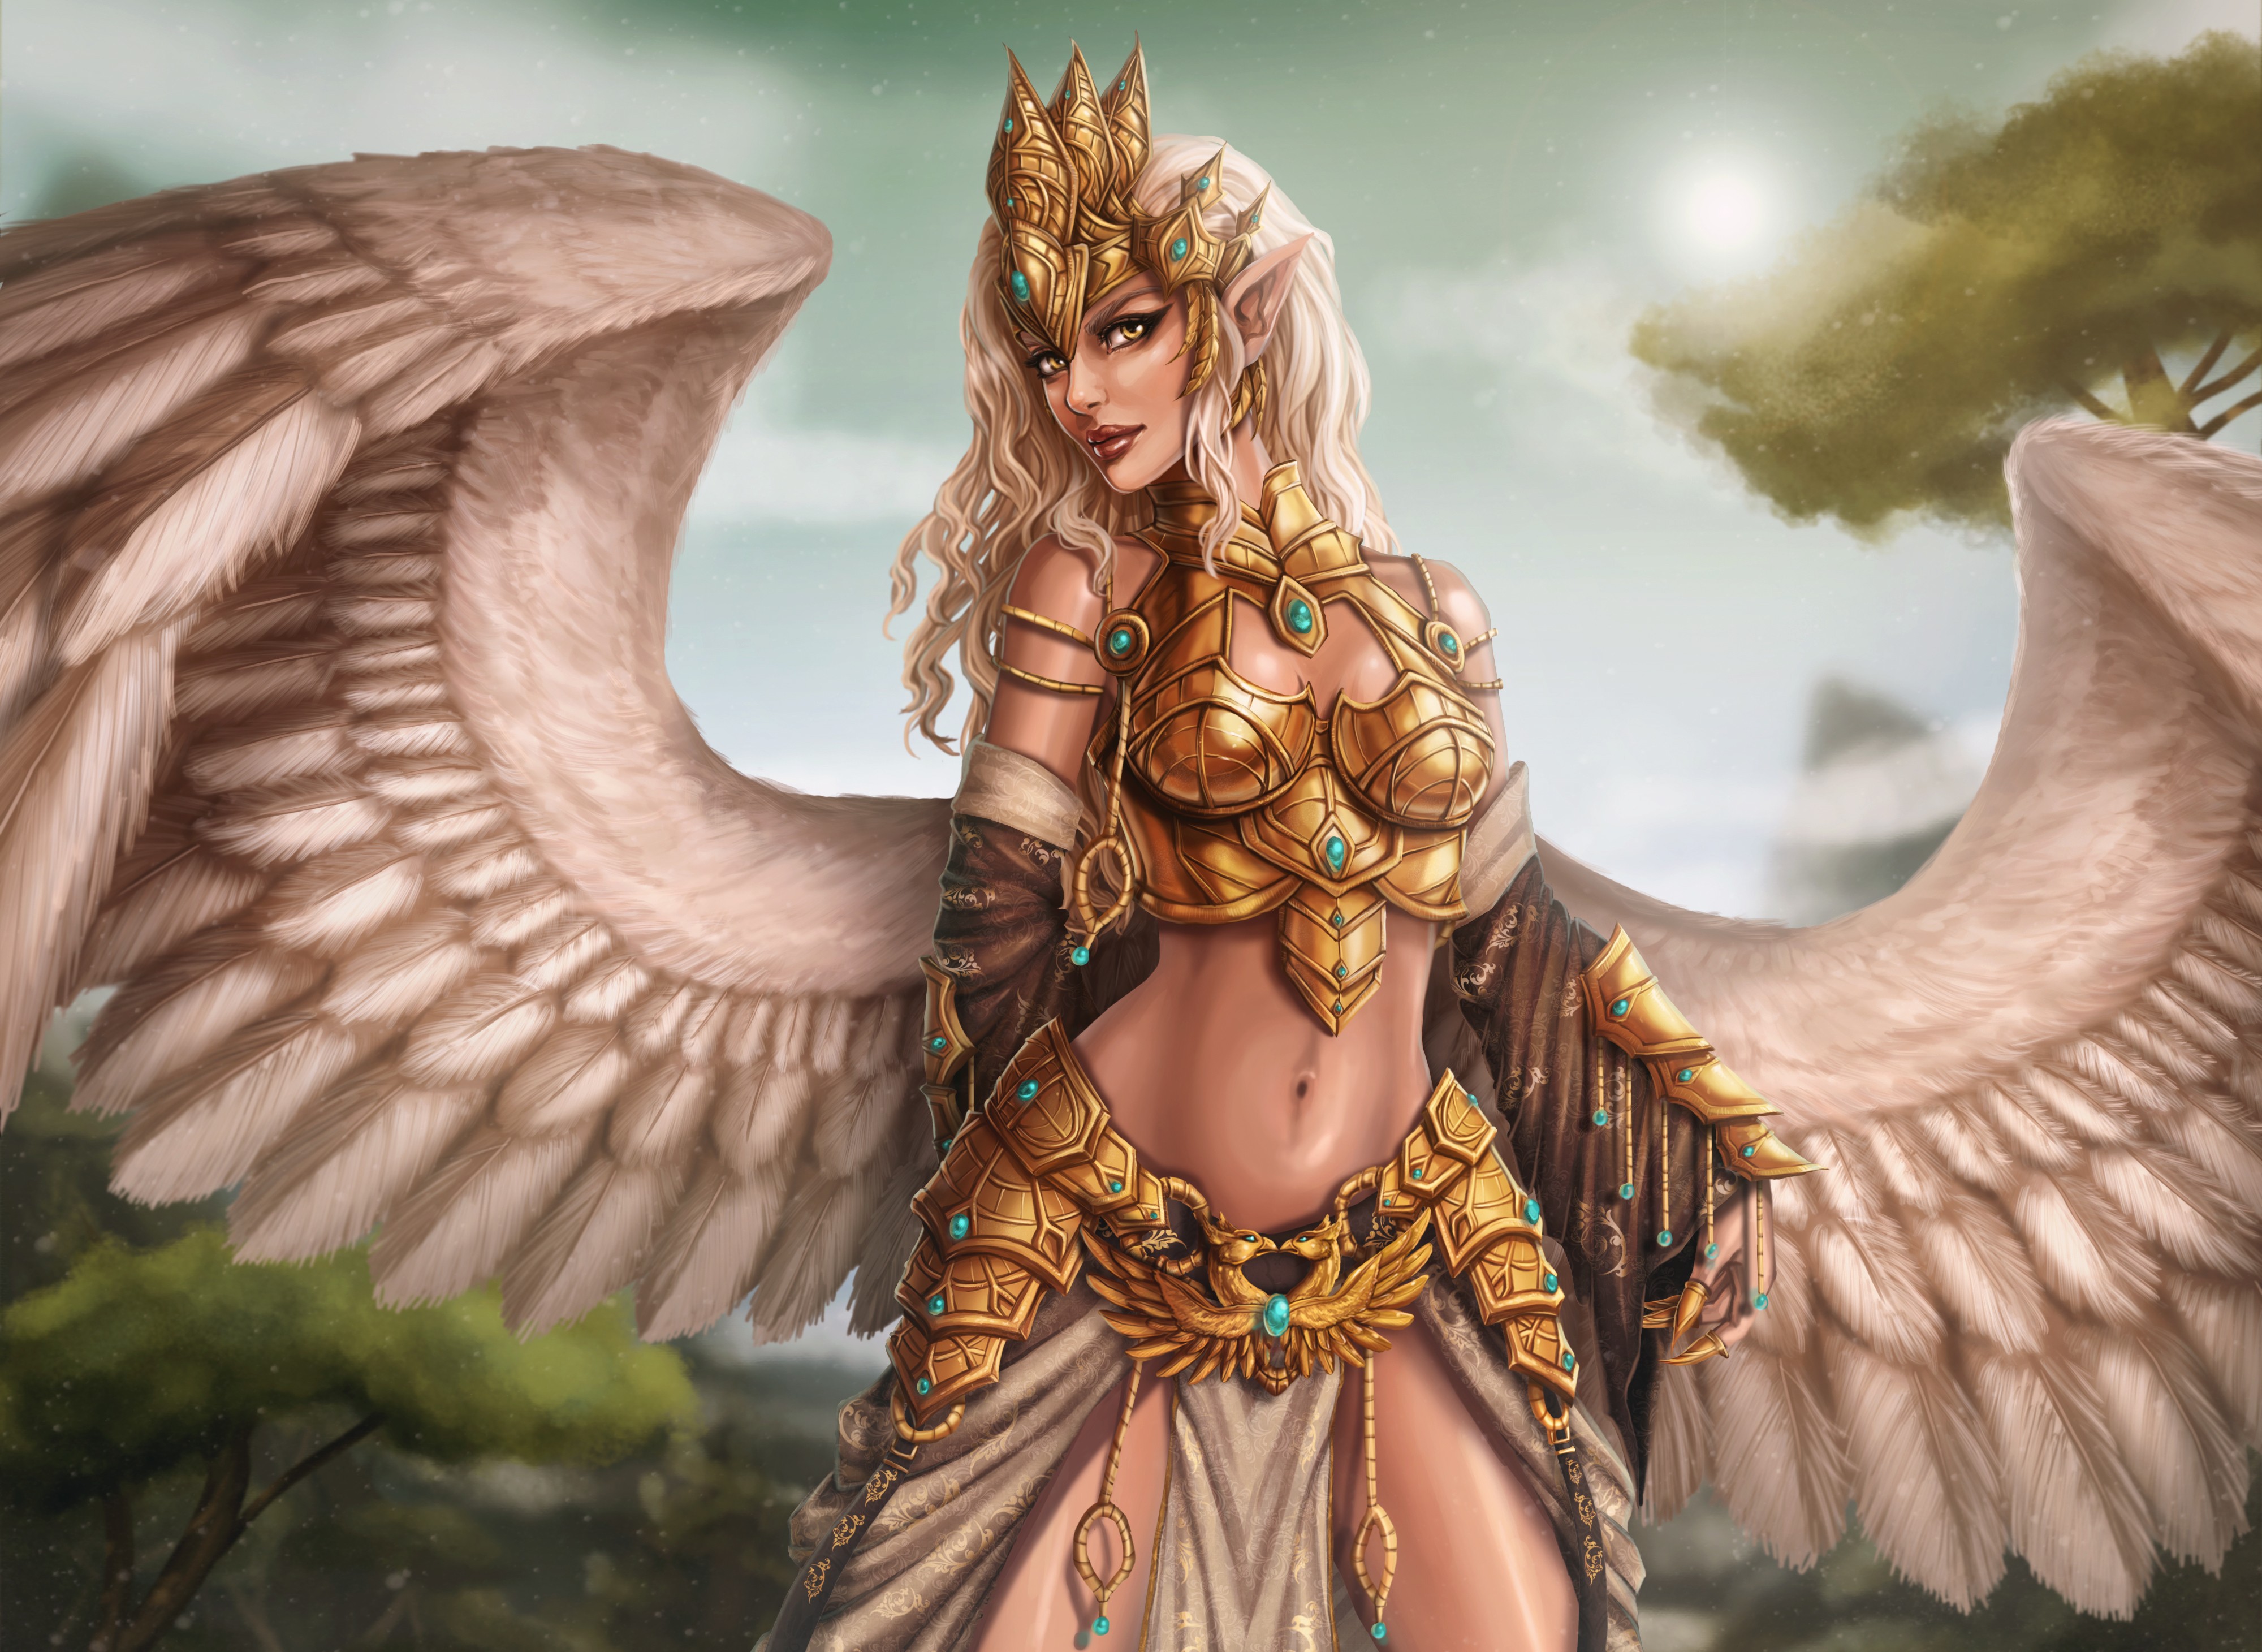 General 4000x2921 fantasy art angel fantasy girl wings belly women slim body pointy ears standing